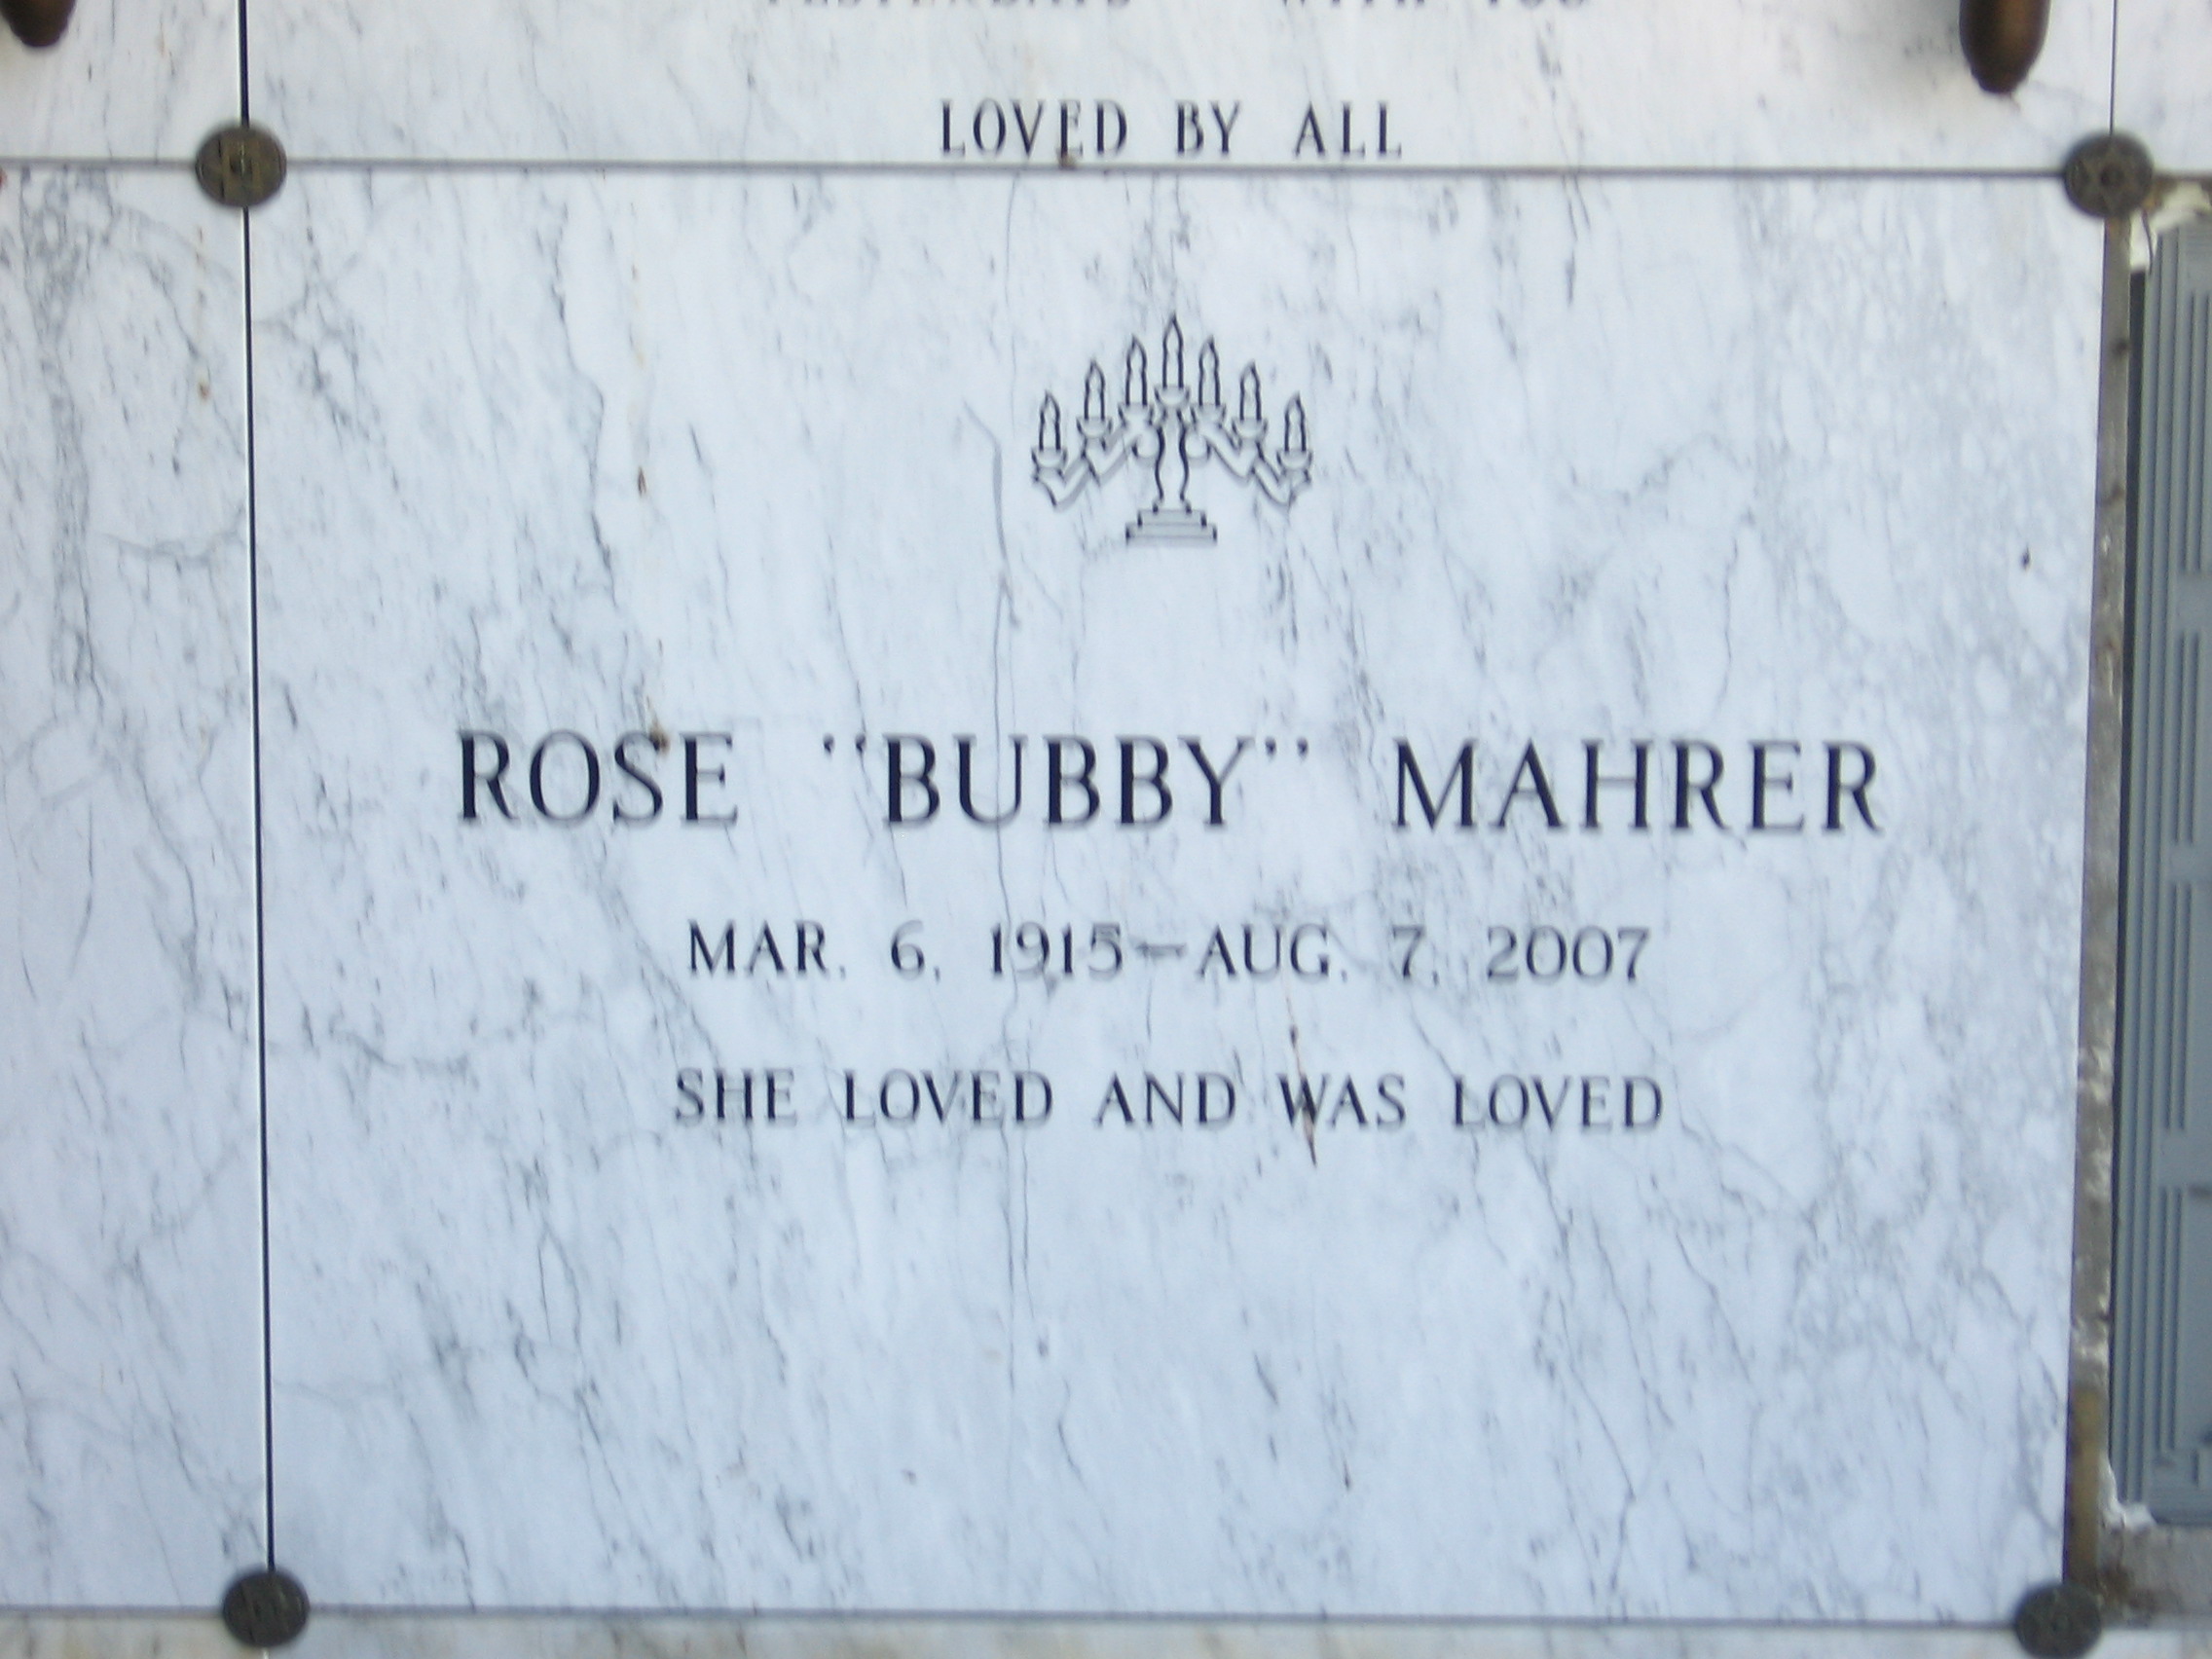 Rose "Bubby" Mahrer